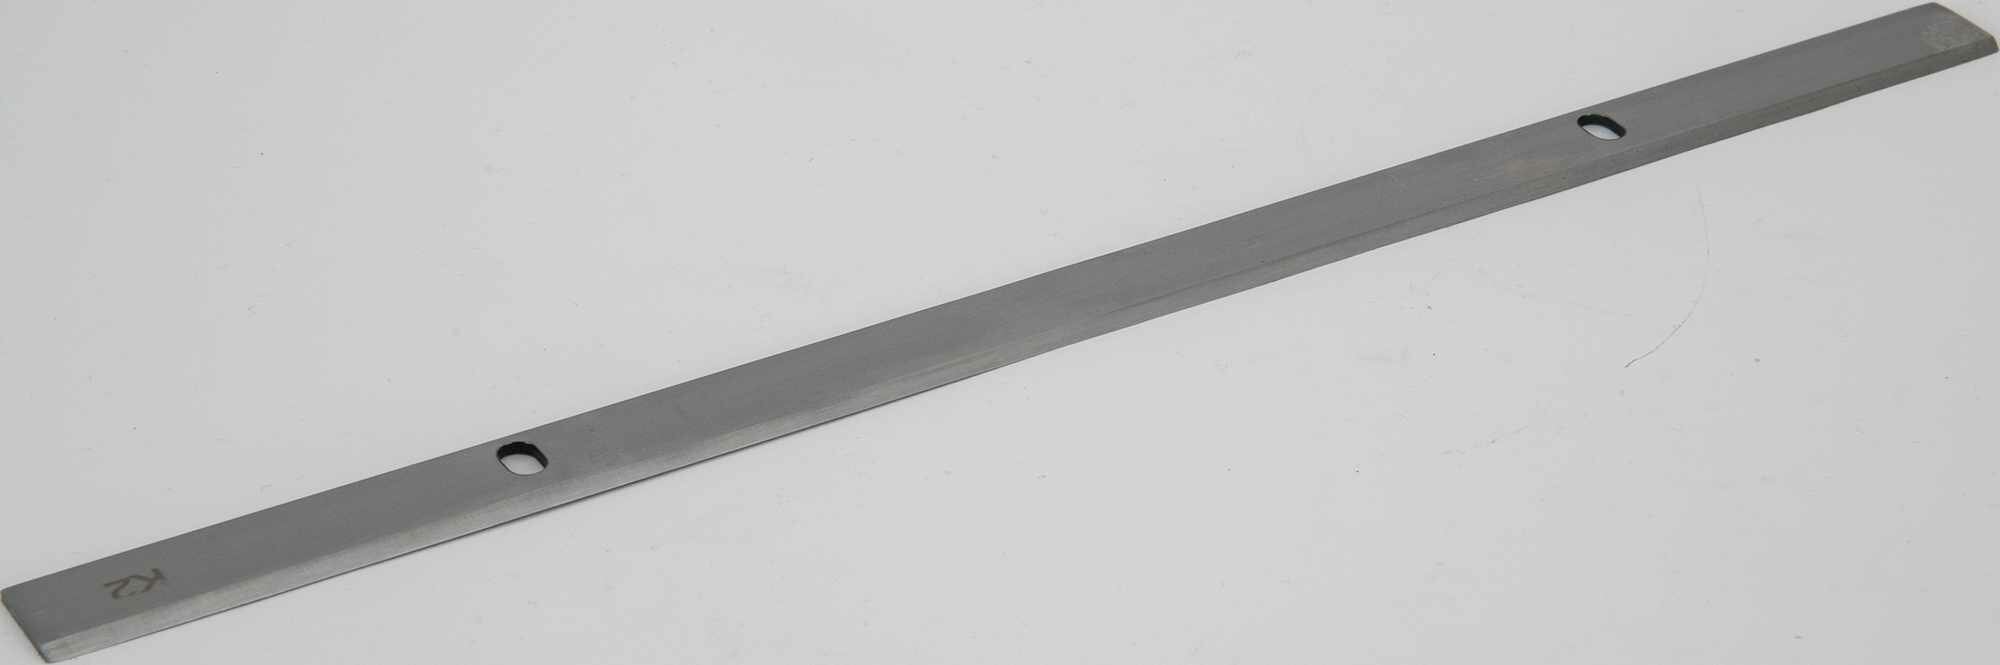 Ножи для рейсмуса Спец БН-332, 332x16.5x1.8 мм, HCS, 2 шт.